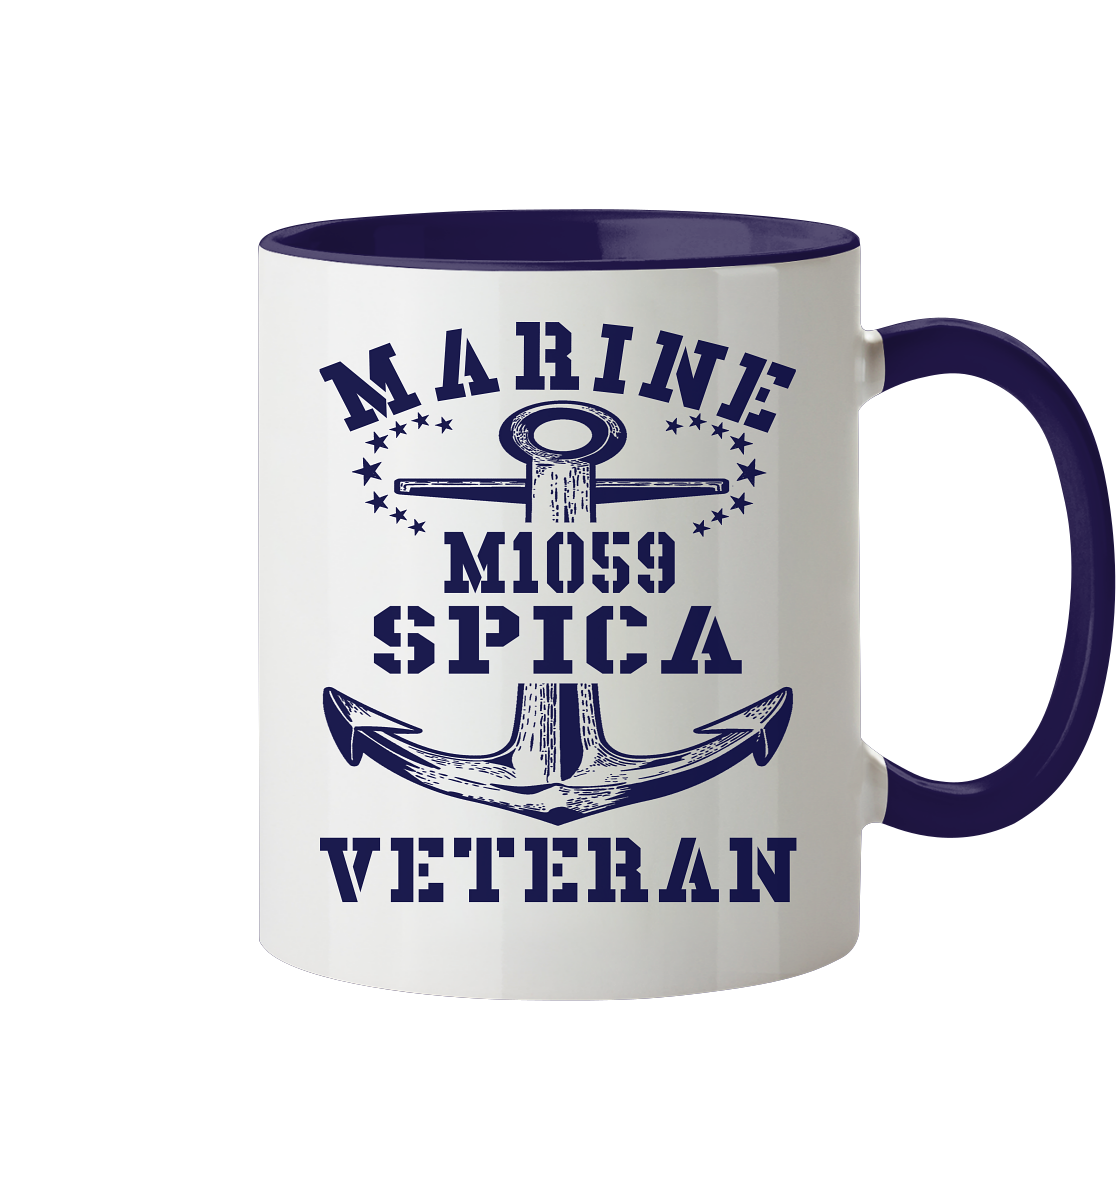 SM-Boot M1059 SPICA Marine Veteran - Tasse zweifarbig